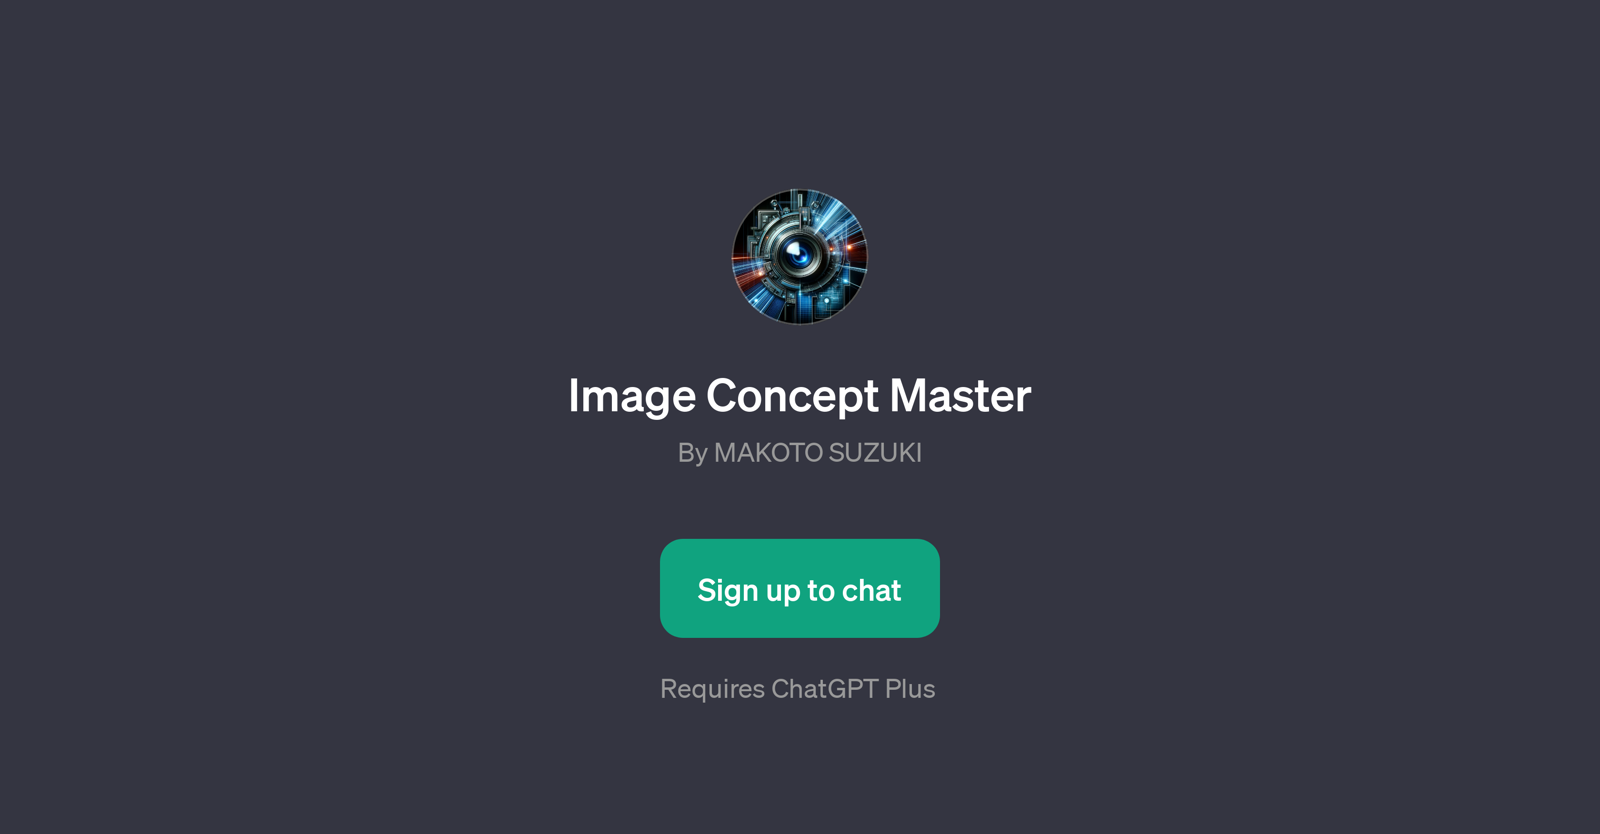 Image Concept Master website